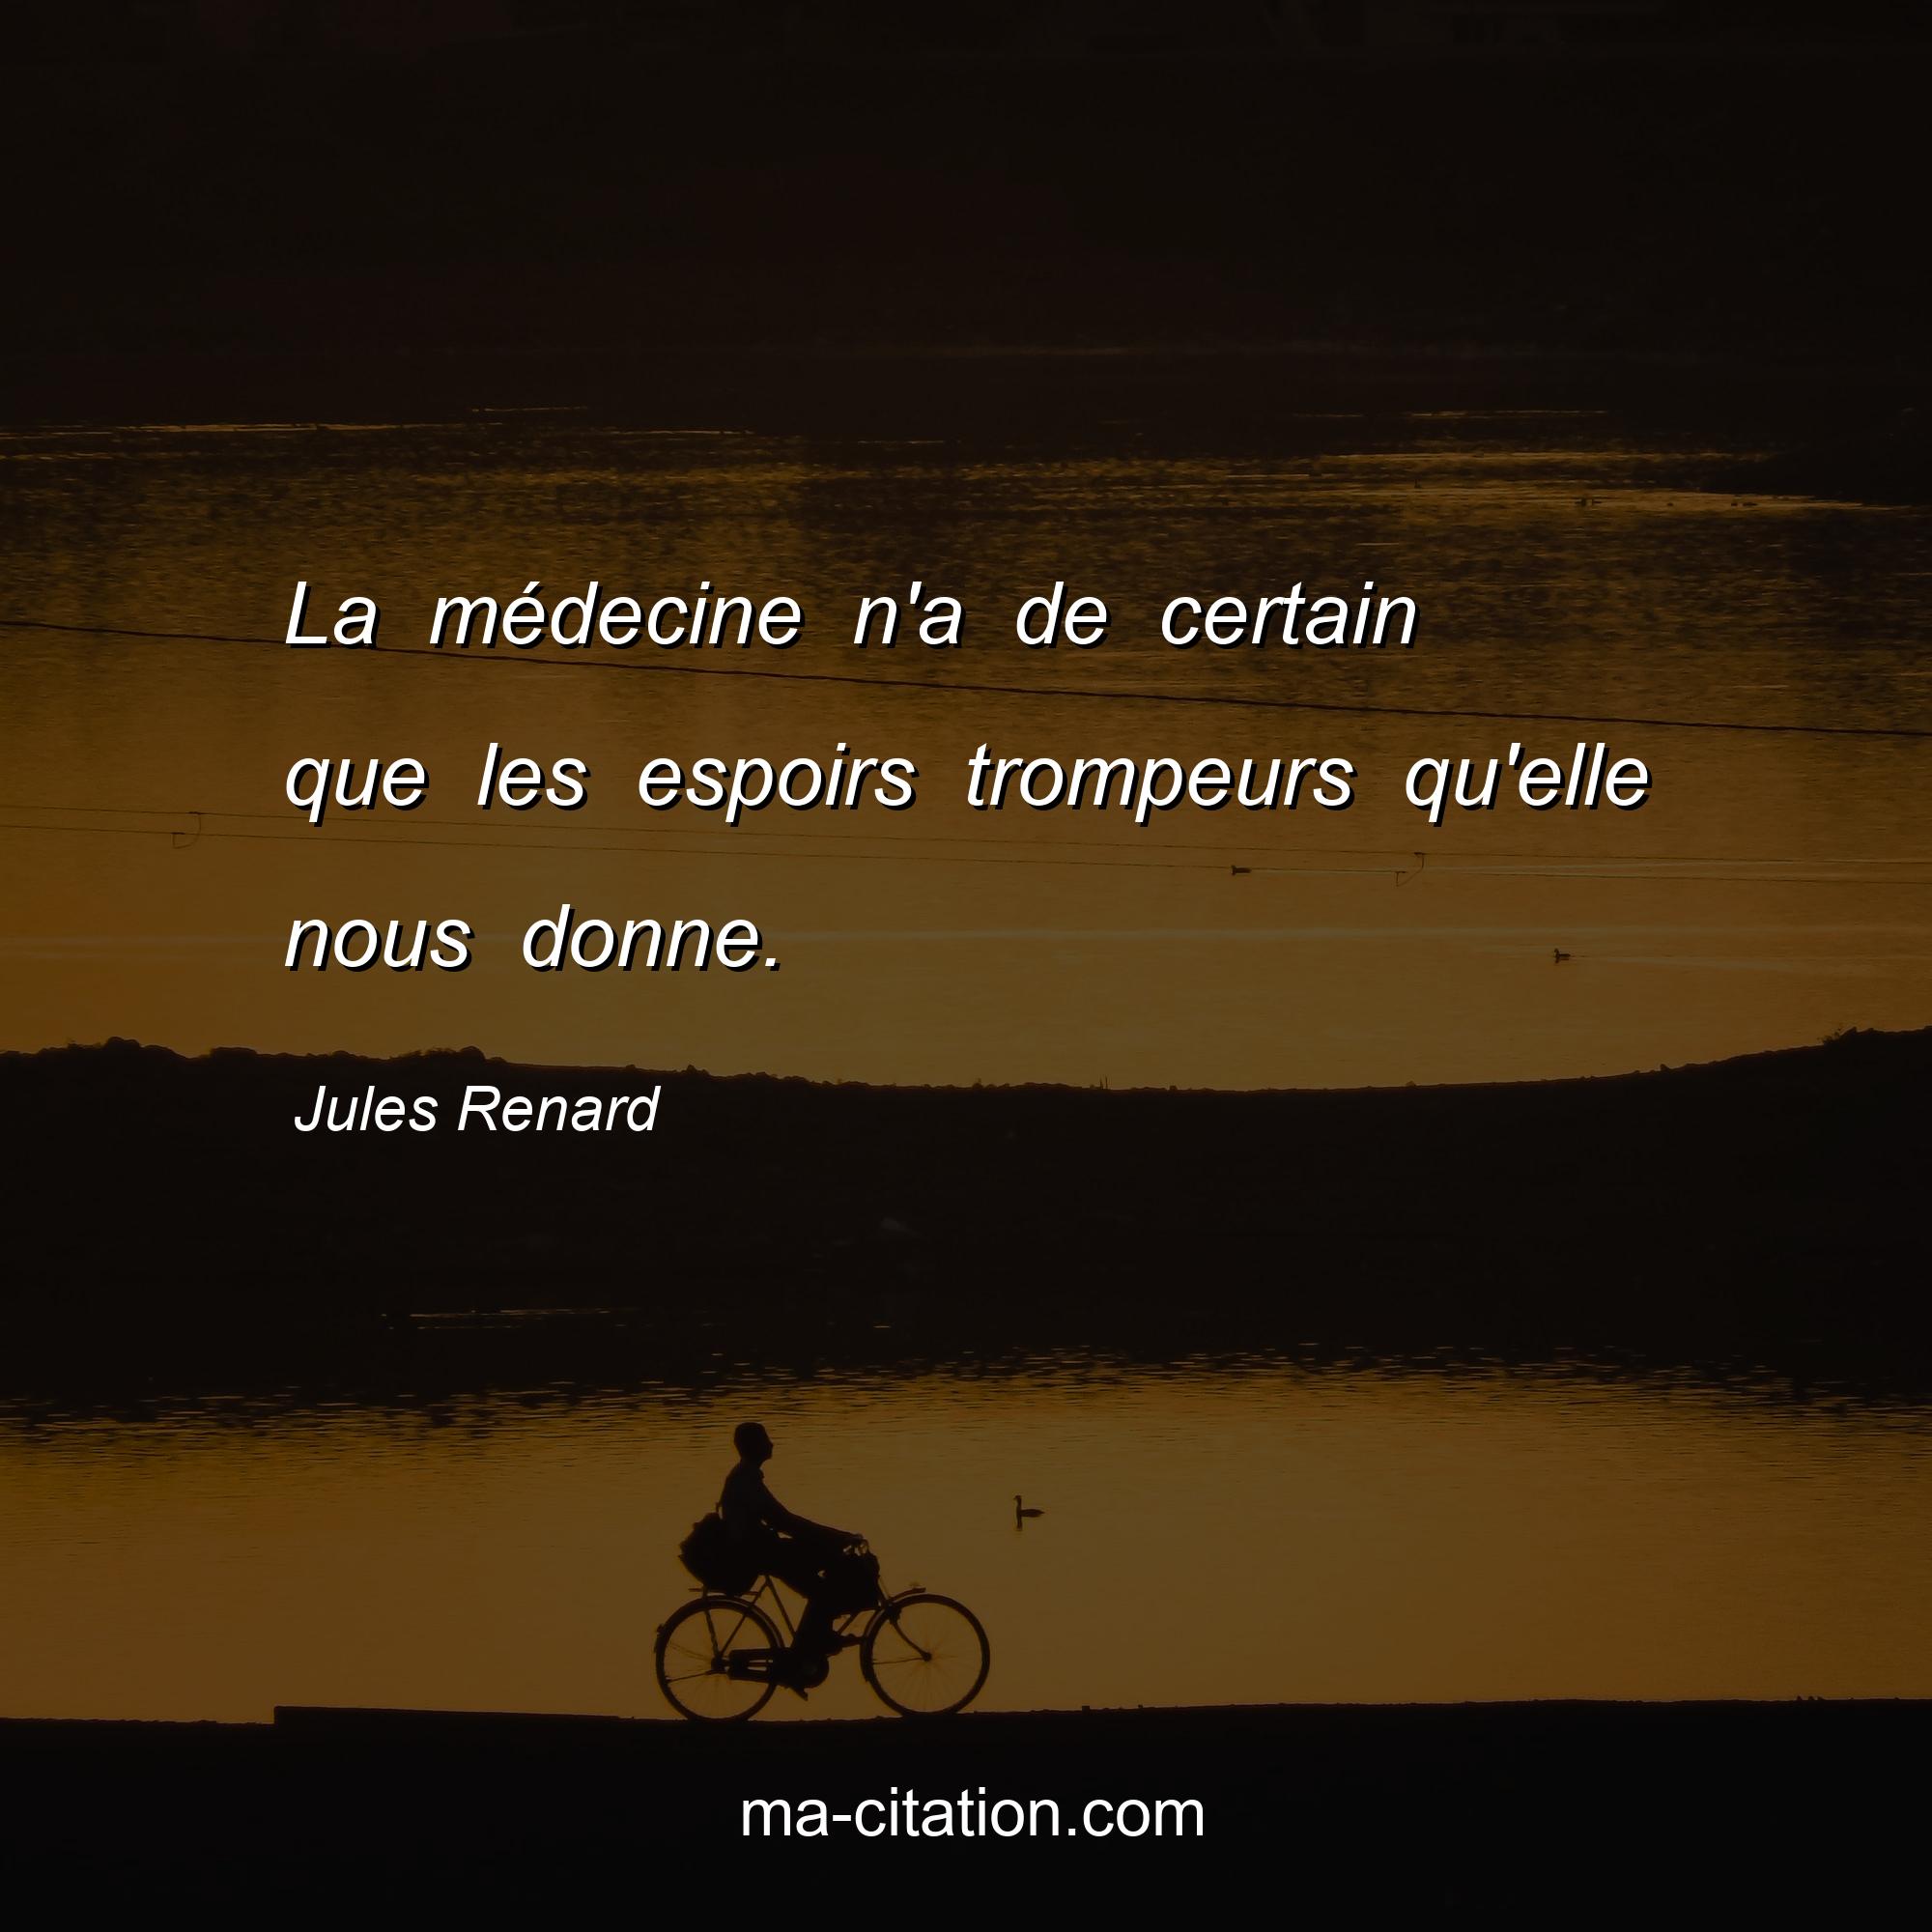 Jules Renard : La médecine n'a de certain que les espoirs trompeurs qu'elle nous donne.